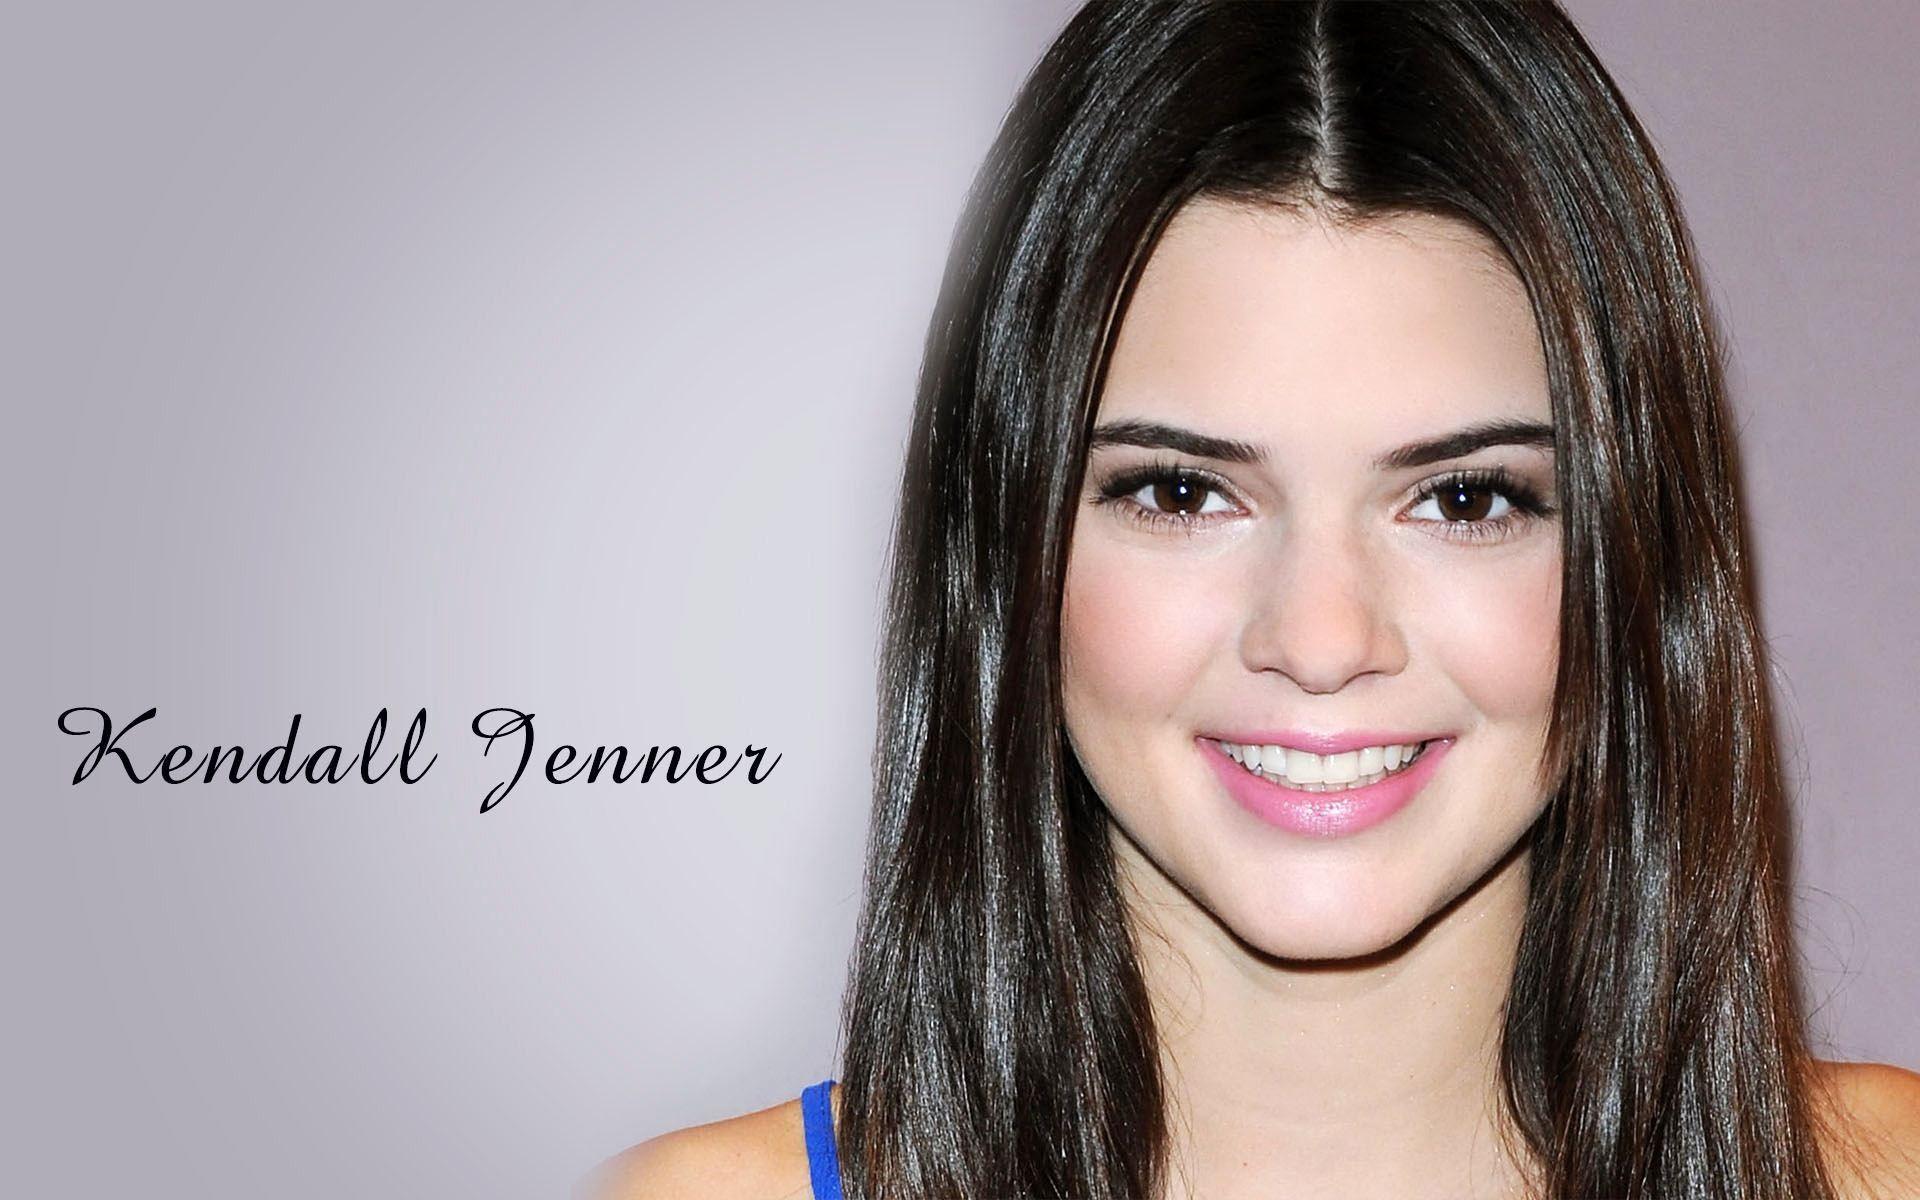 Kendall Jenner 2015 Wallpaper